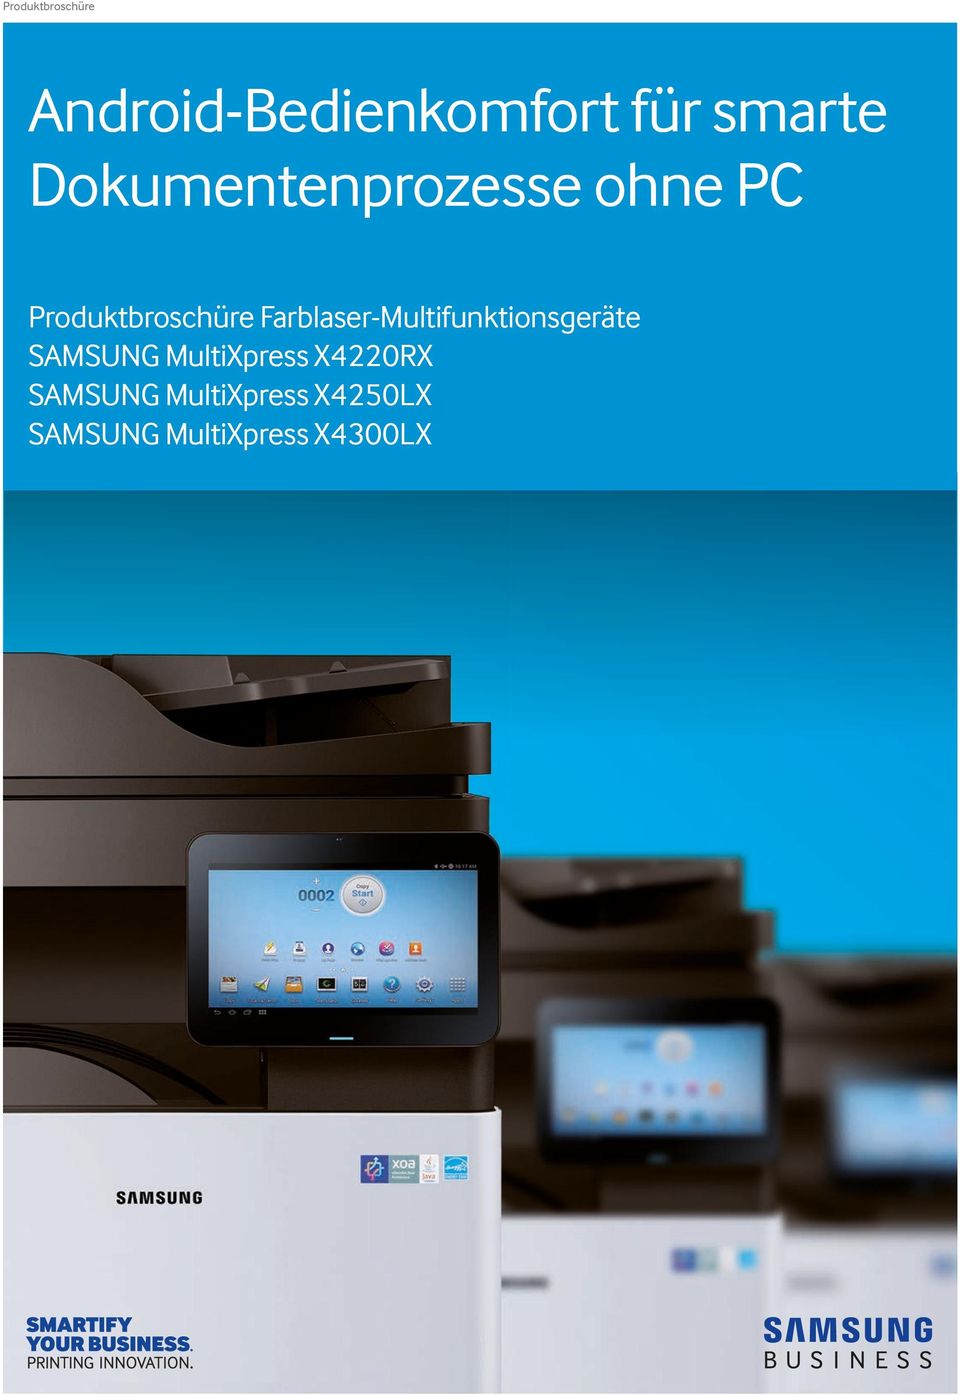 Farblaser-Multifunktionsgeräte SAMSUNG MultiXpress